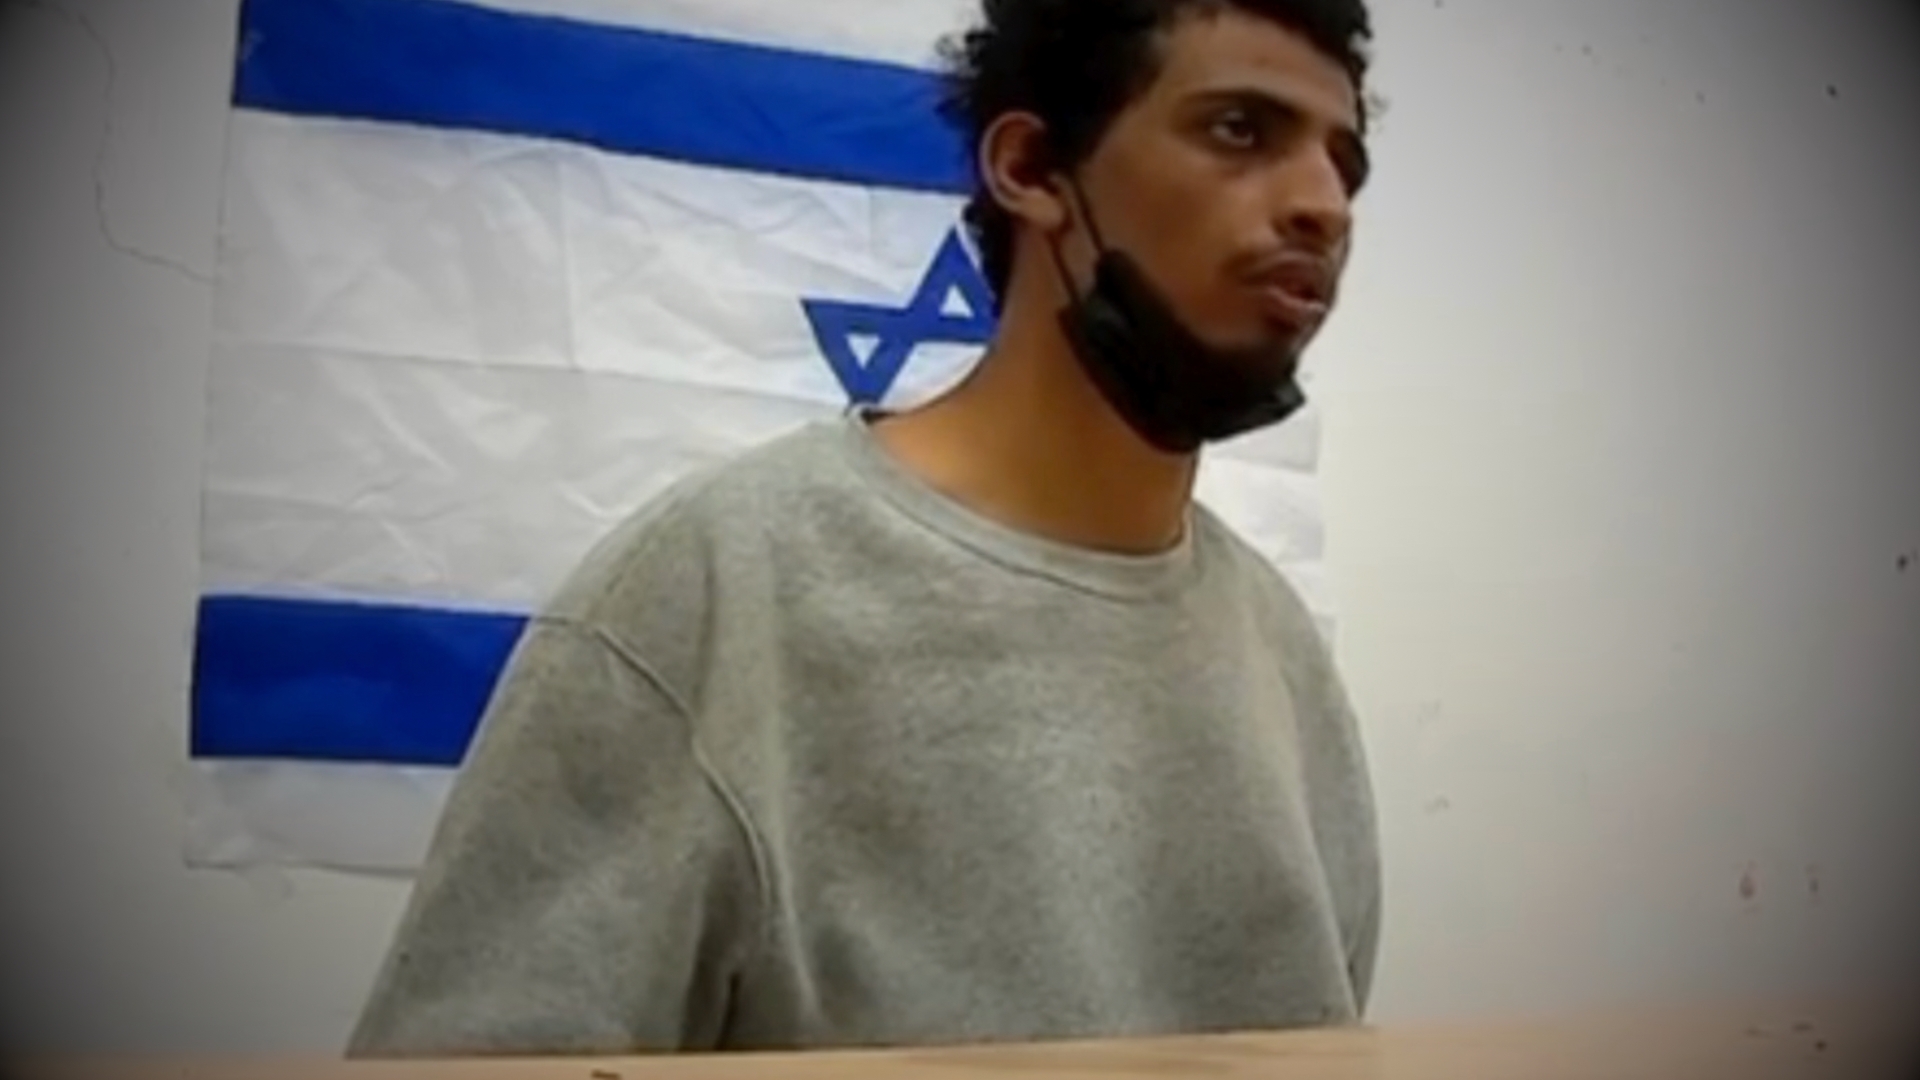 La terribile confessione del terrorista: “Così ho stuprato quella ebrea”